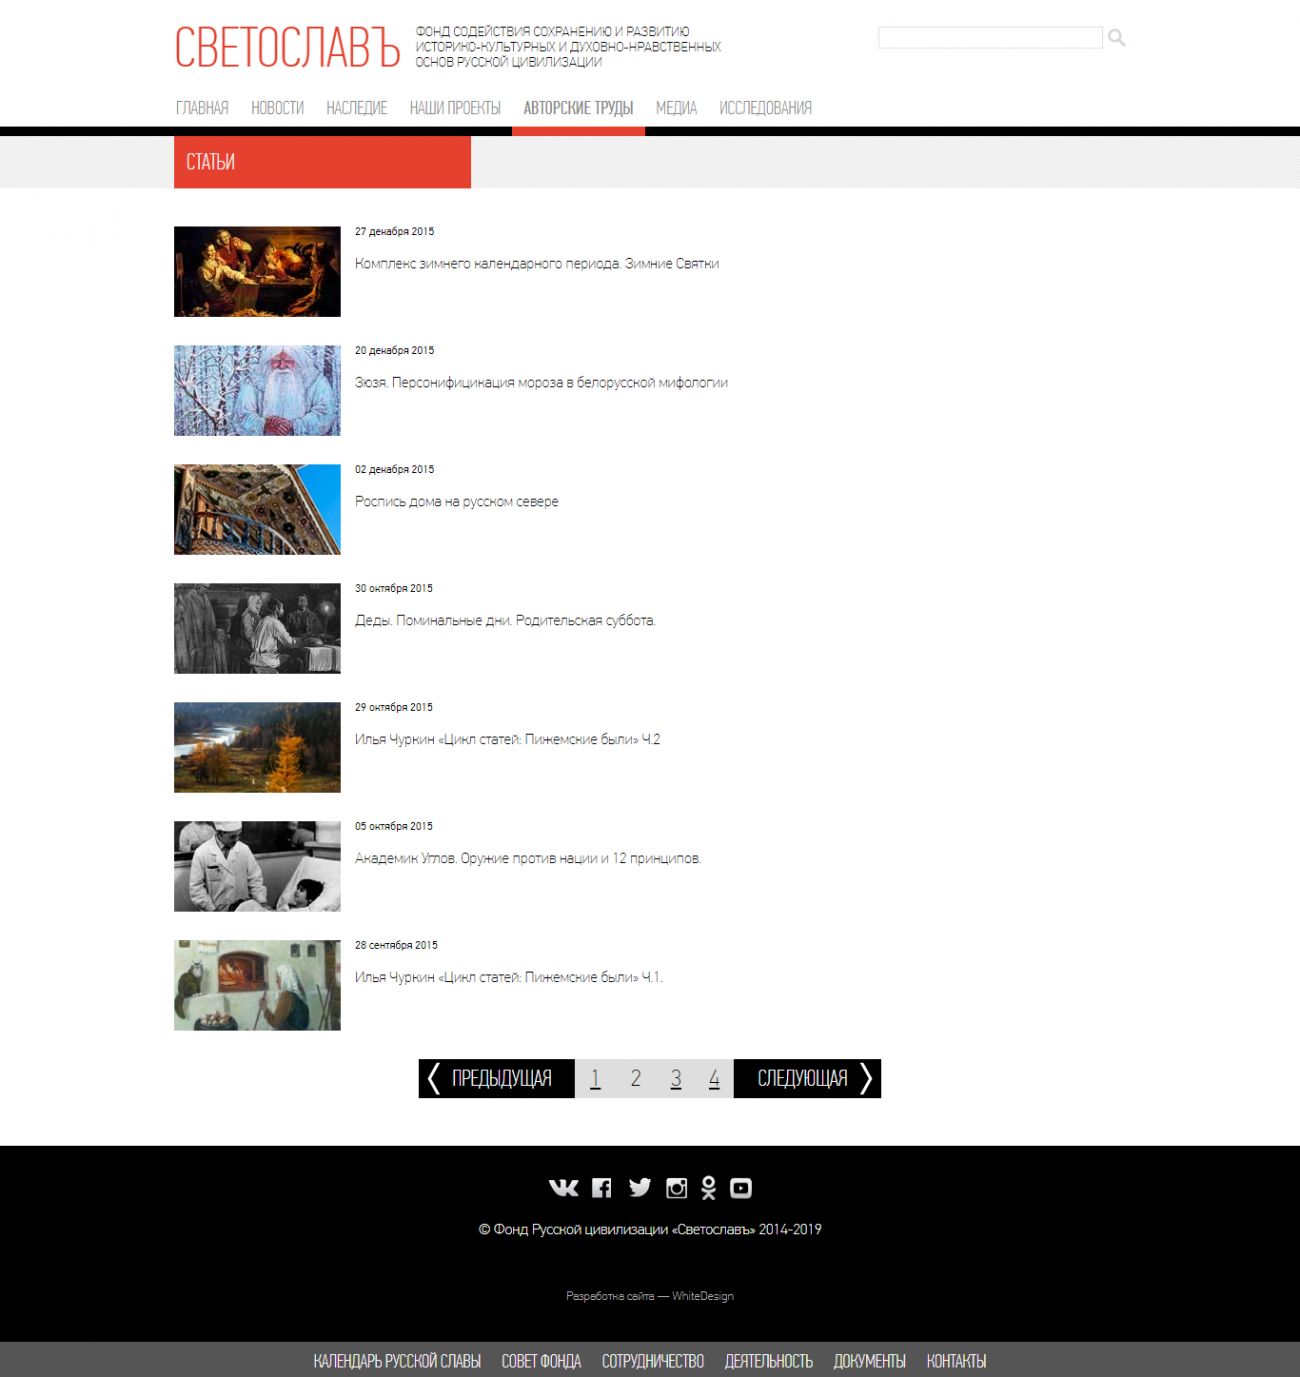 Макет страницы списка статей сайта Фонд Светослав